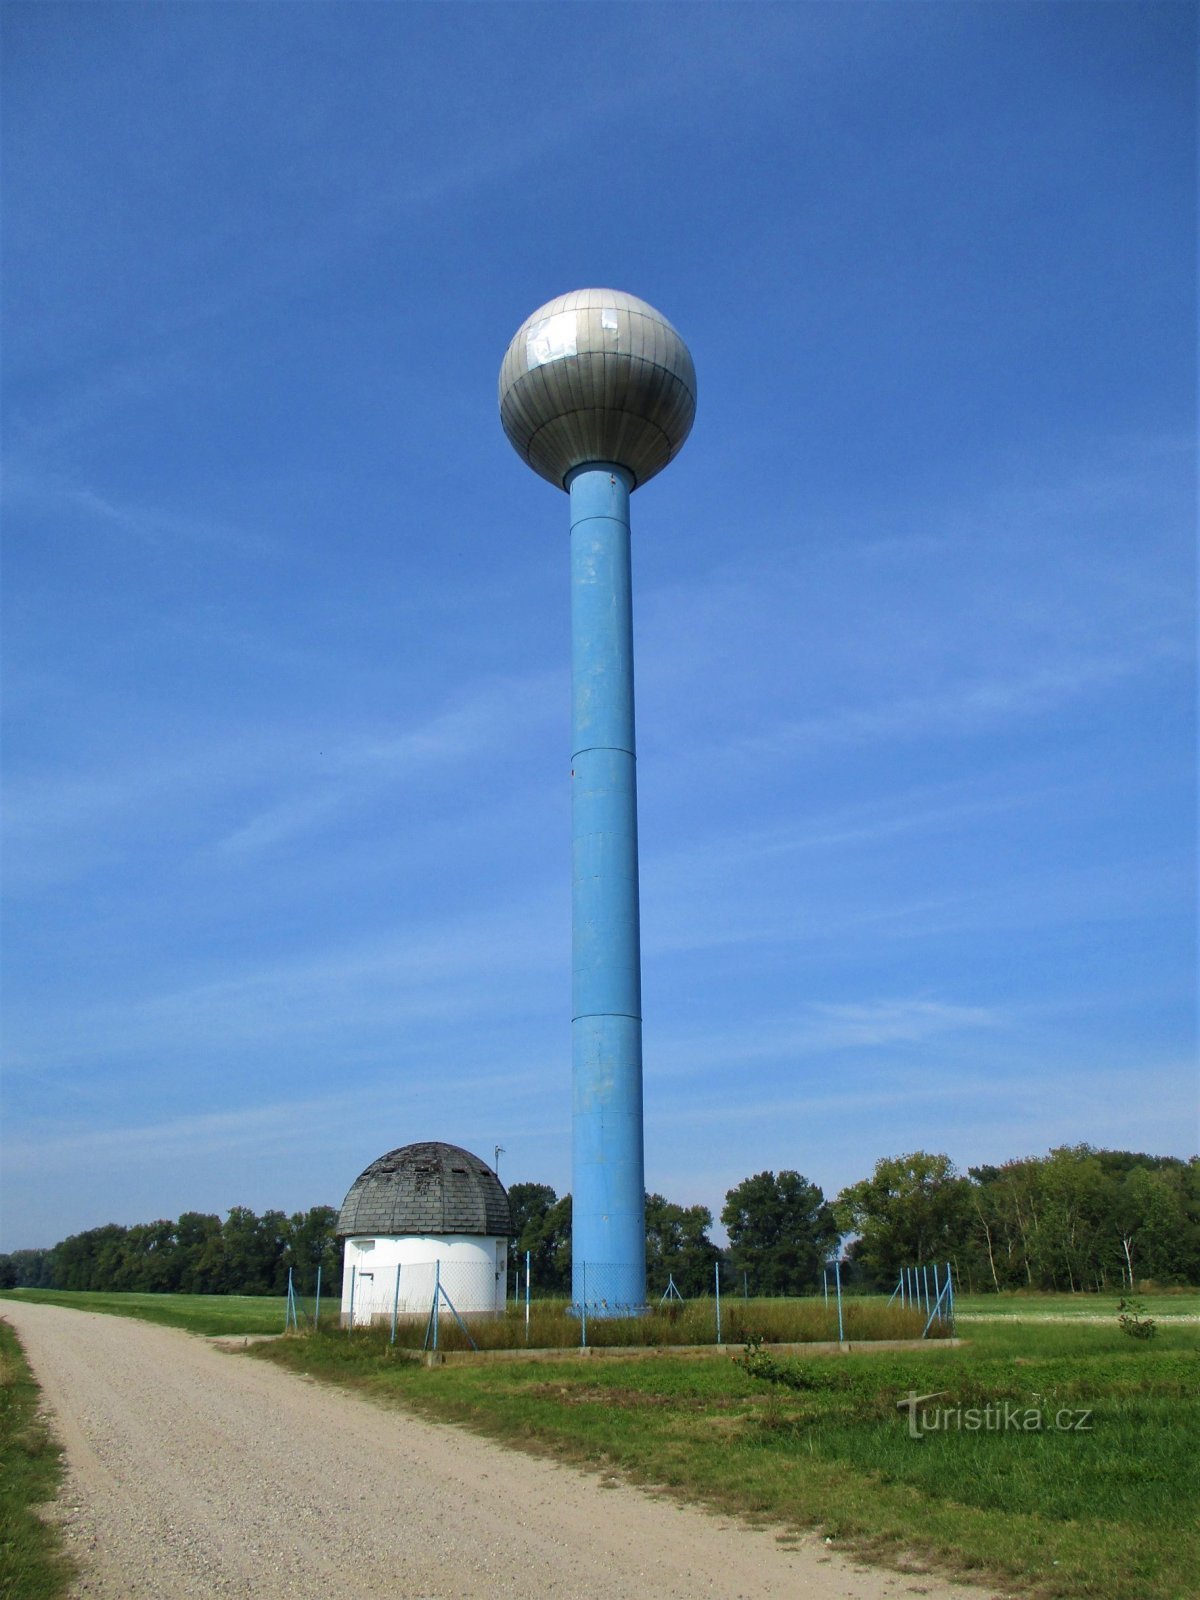 Zbiornik wodny wieży Aquaglobus (Kratonohy, 13.9.2020)